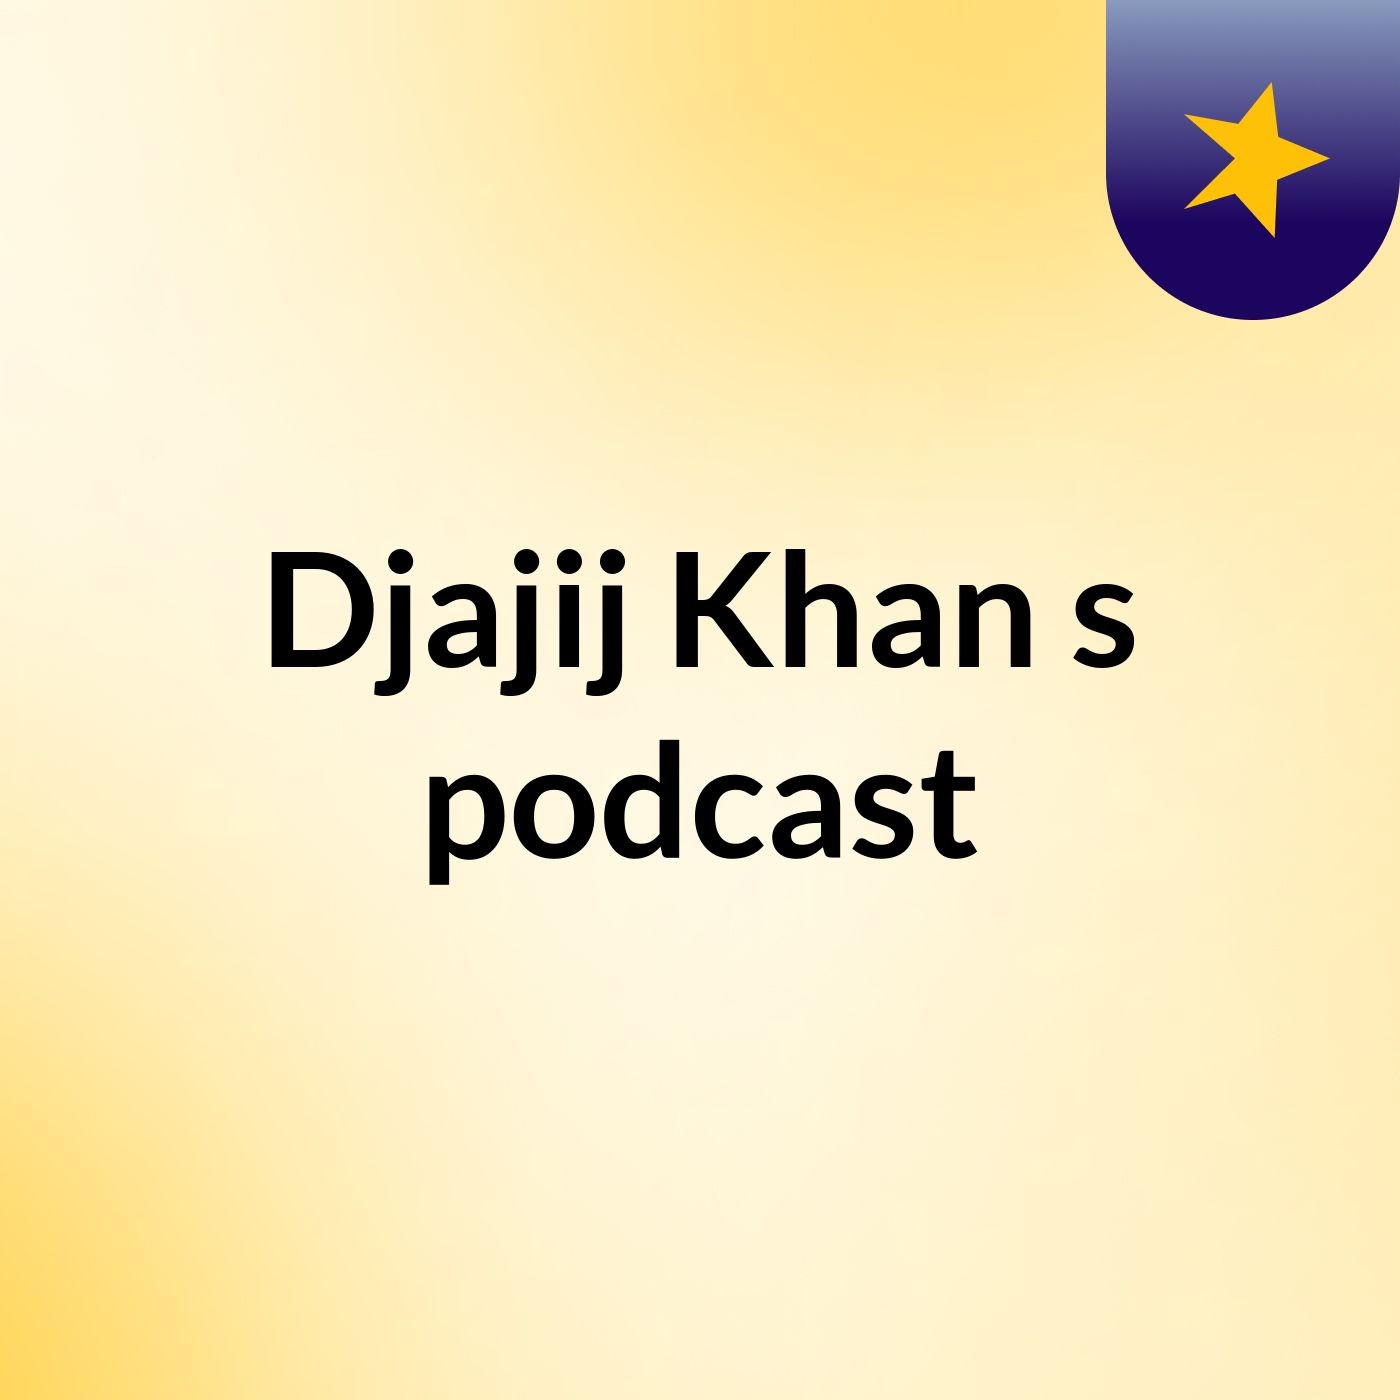 Episode 3 - Djajij Khan's podcast